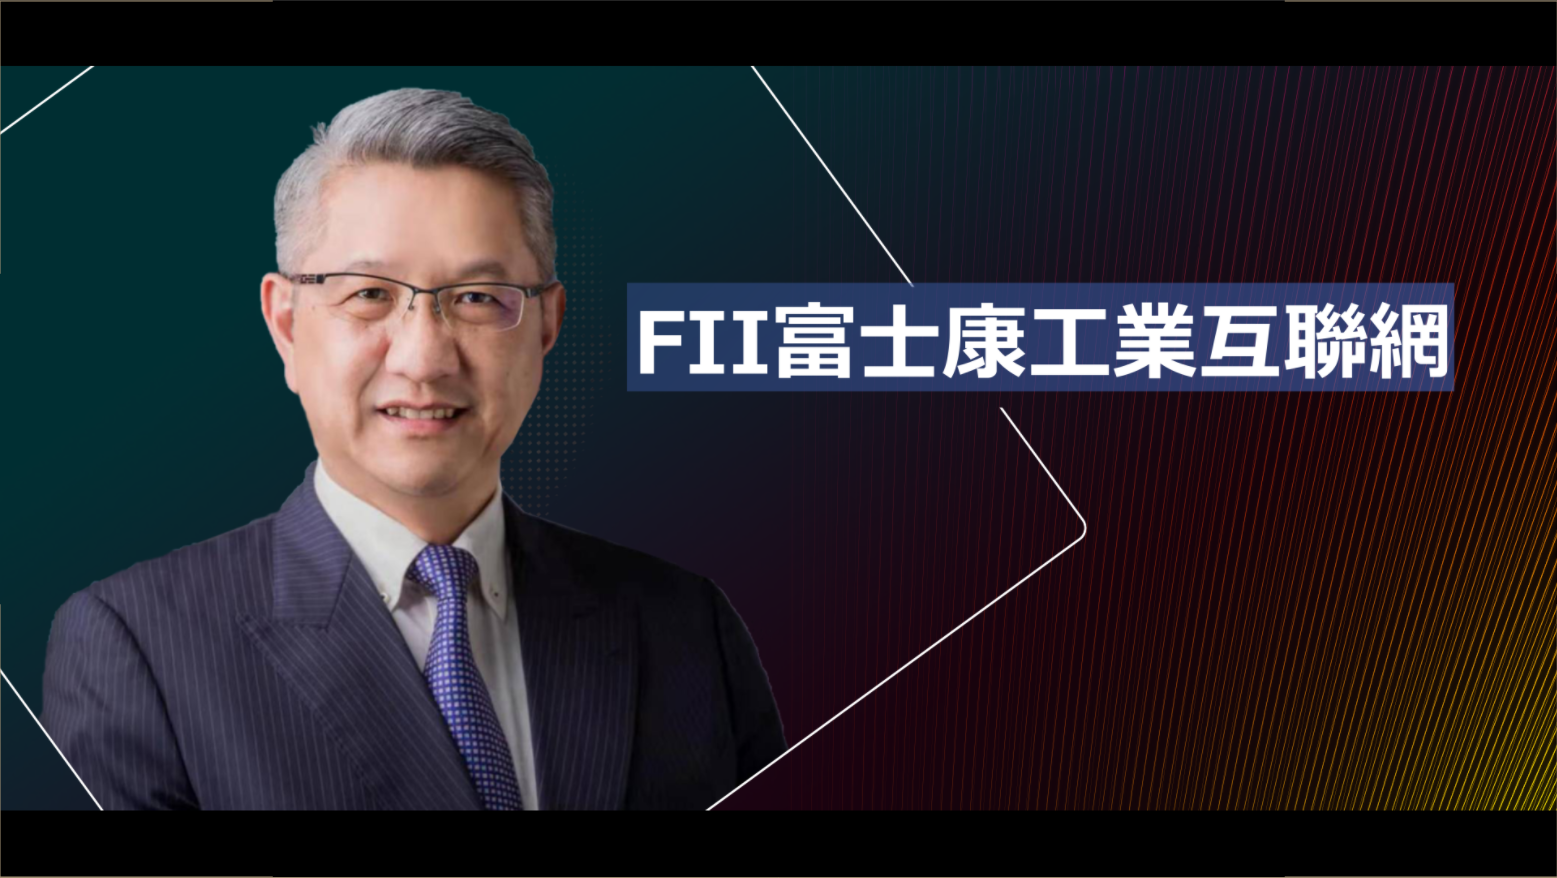 富士康工業互聯網FII - 鄭弘孟首席執行官 ▏2019企業高峰年會